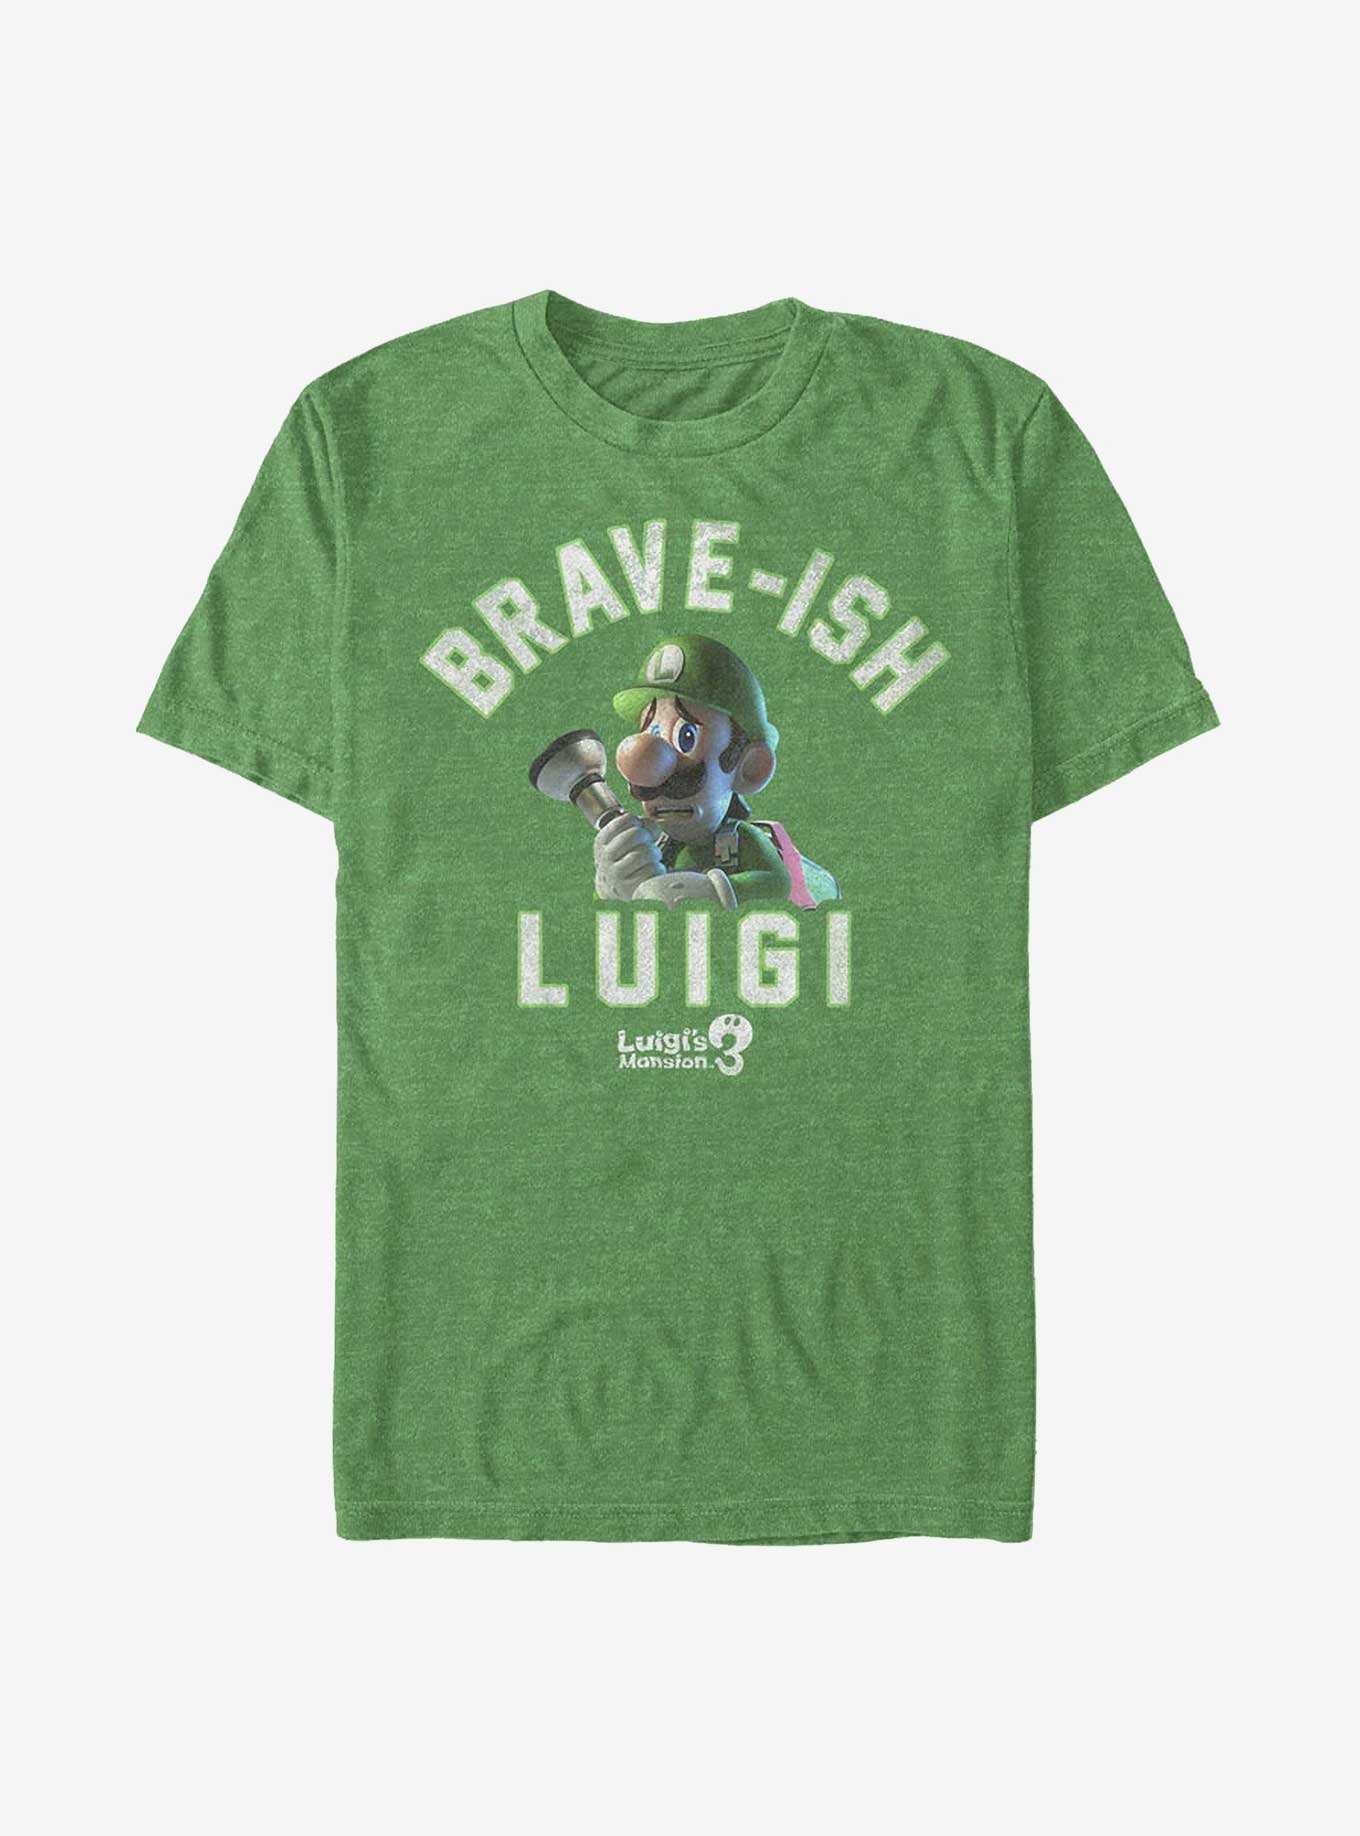 Nintendo Mario Brave-ish Luigi T-Shirt, , hi-res